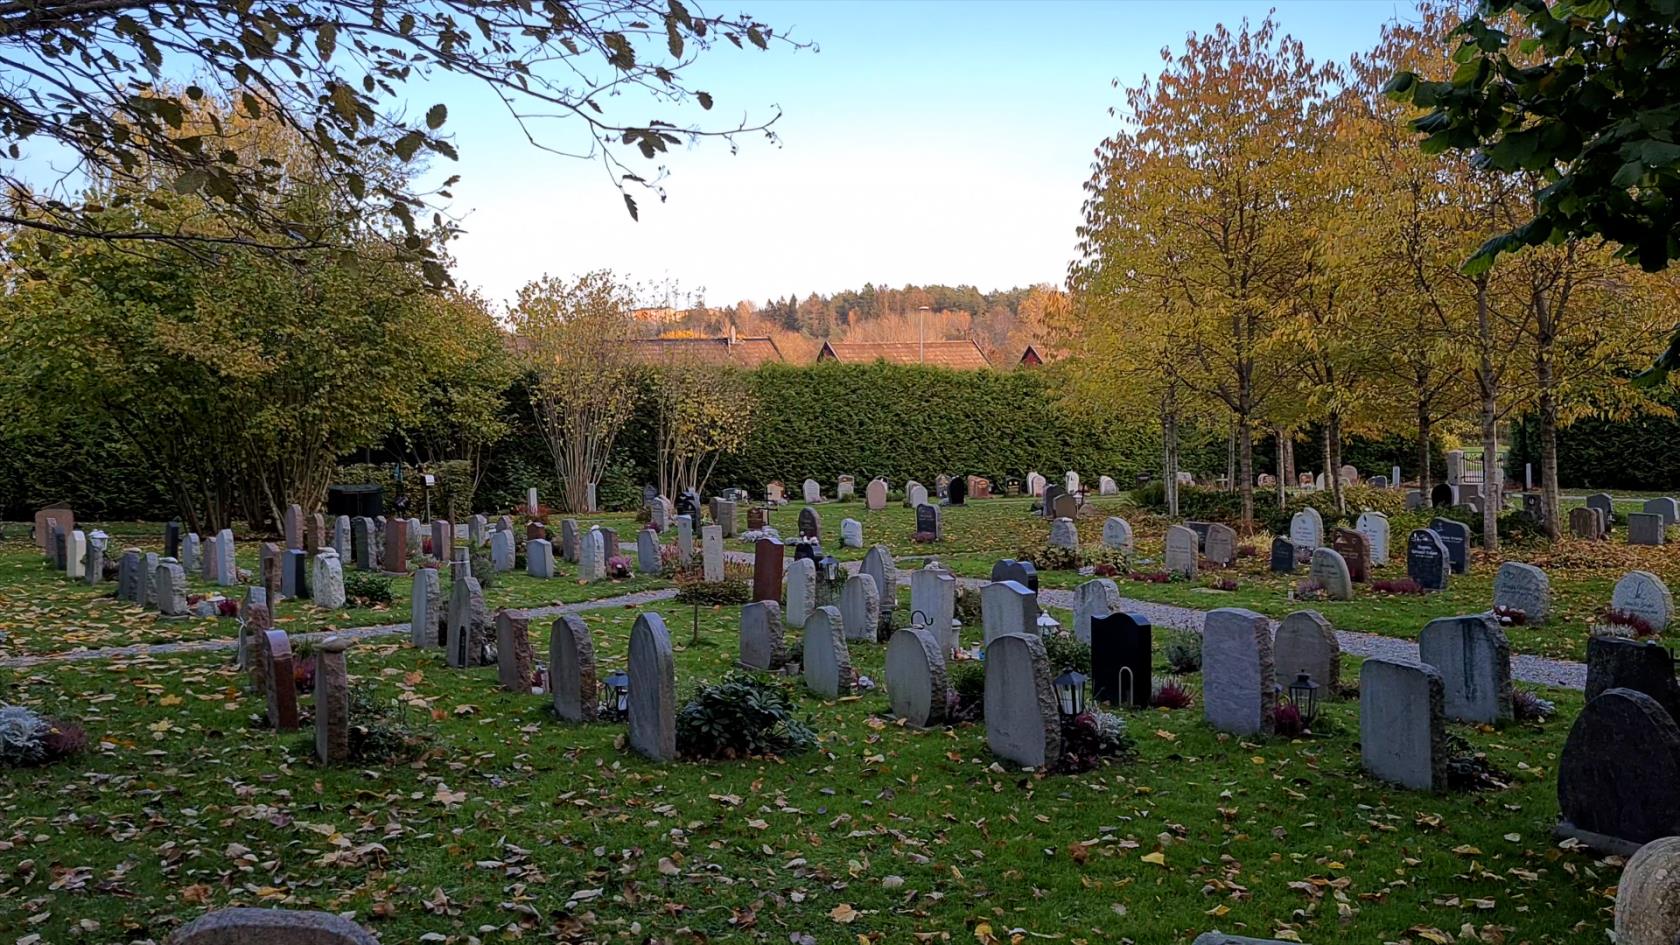 Urngravar med gravstenar på en grön gräsmatta. I bakgrunden syns en blå himmel och träd med gula löv.